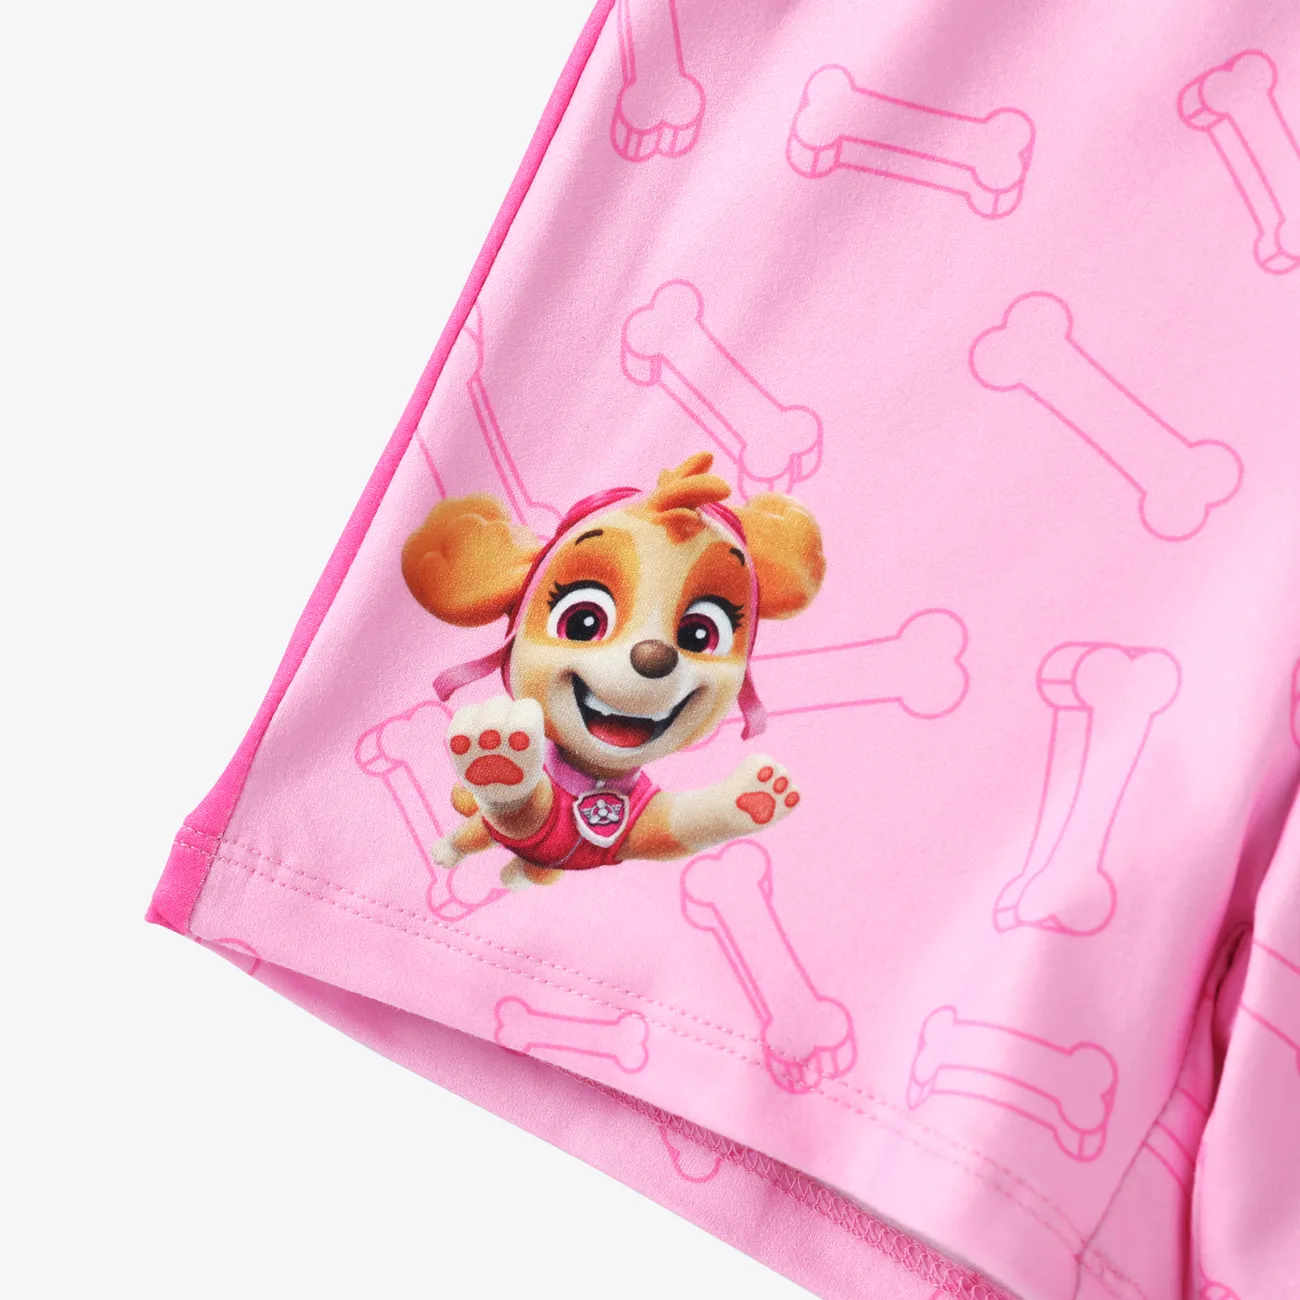 La Squadra dei Cuccioli 2 pezzi Bambino piccolo Unisex Cuciture in tessuto Infantile Cane set di t-shirt Rosa big image 1